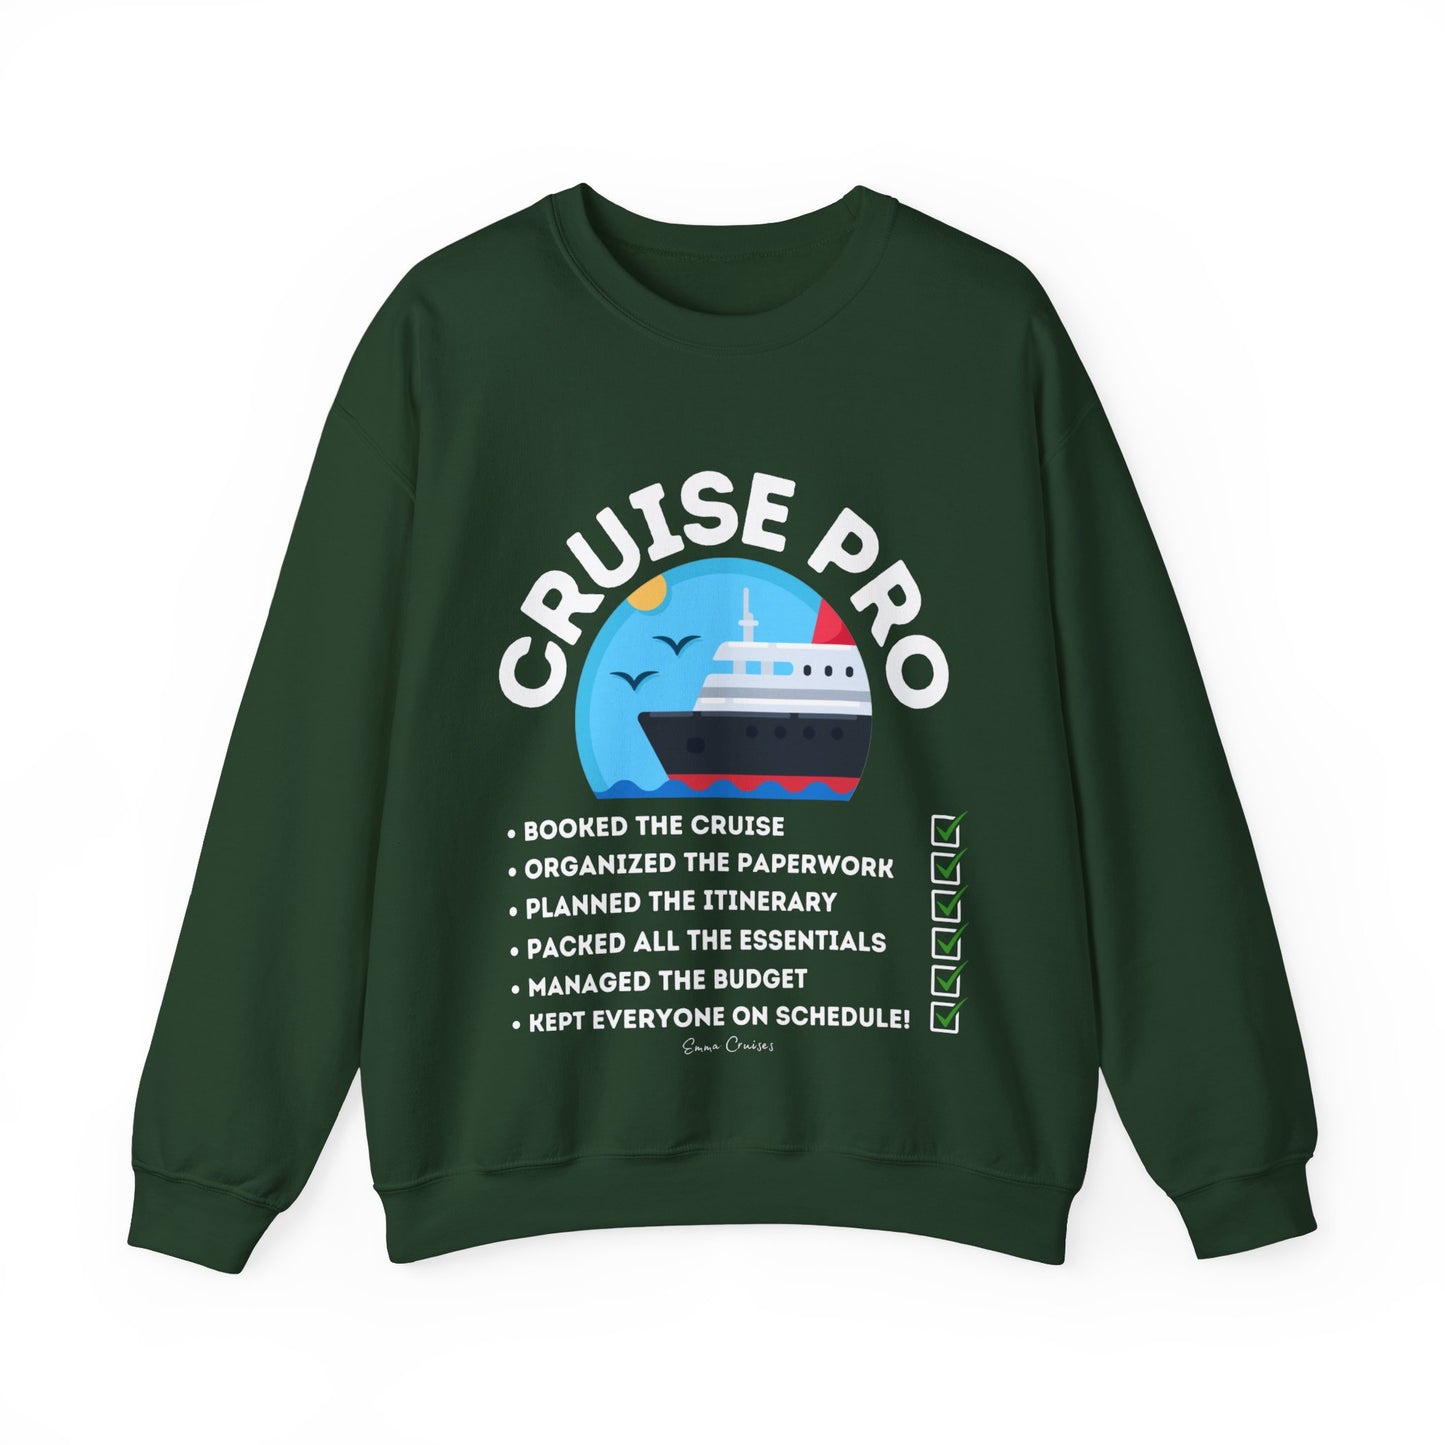 I'm a Cruise Pro - UNISEX Crewneck Sweatshirt